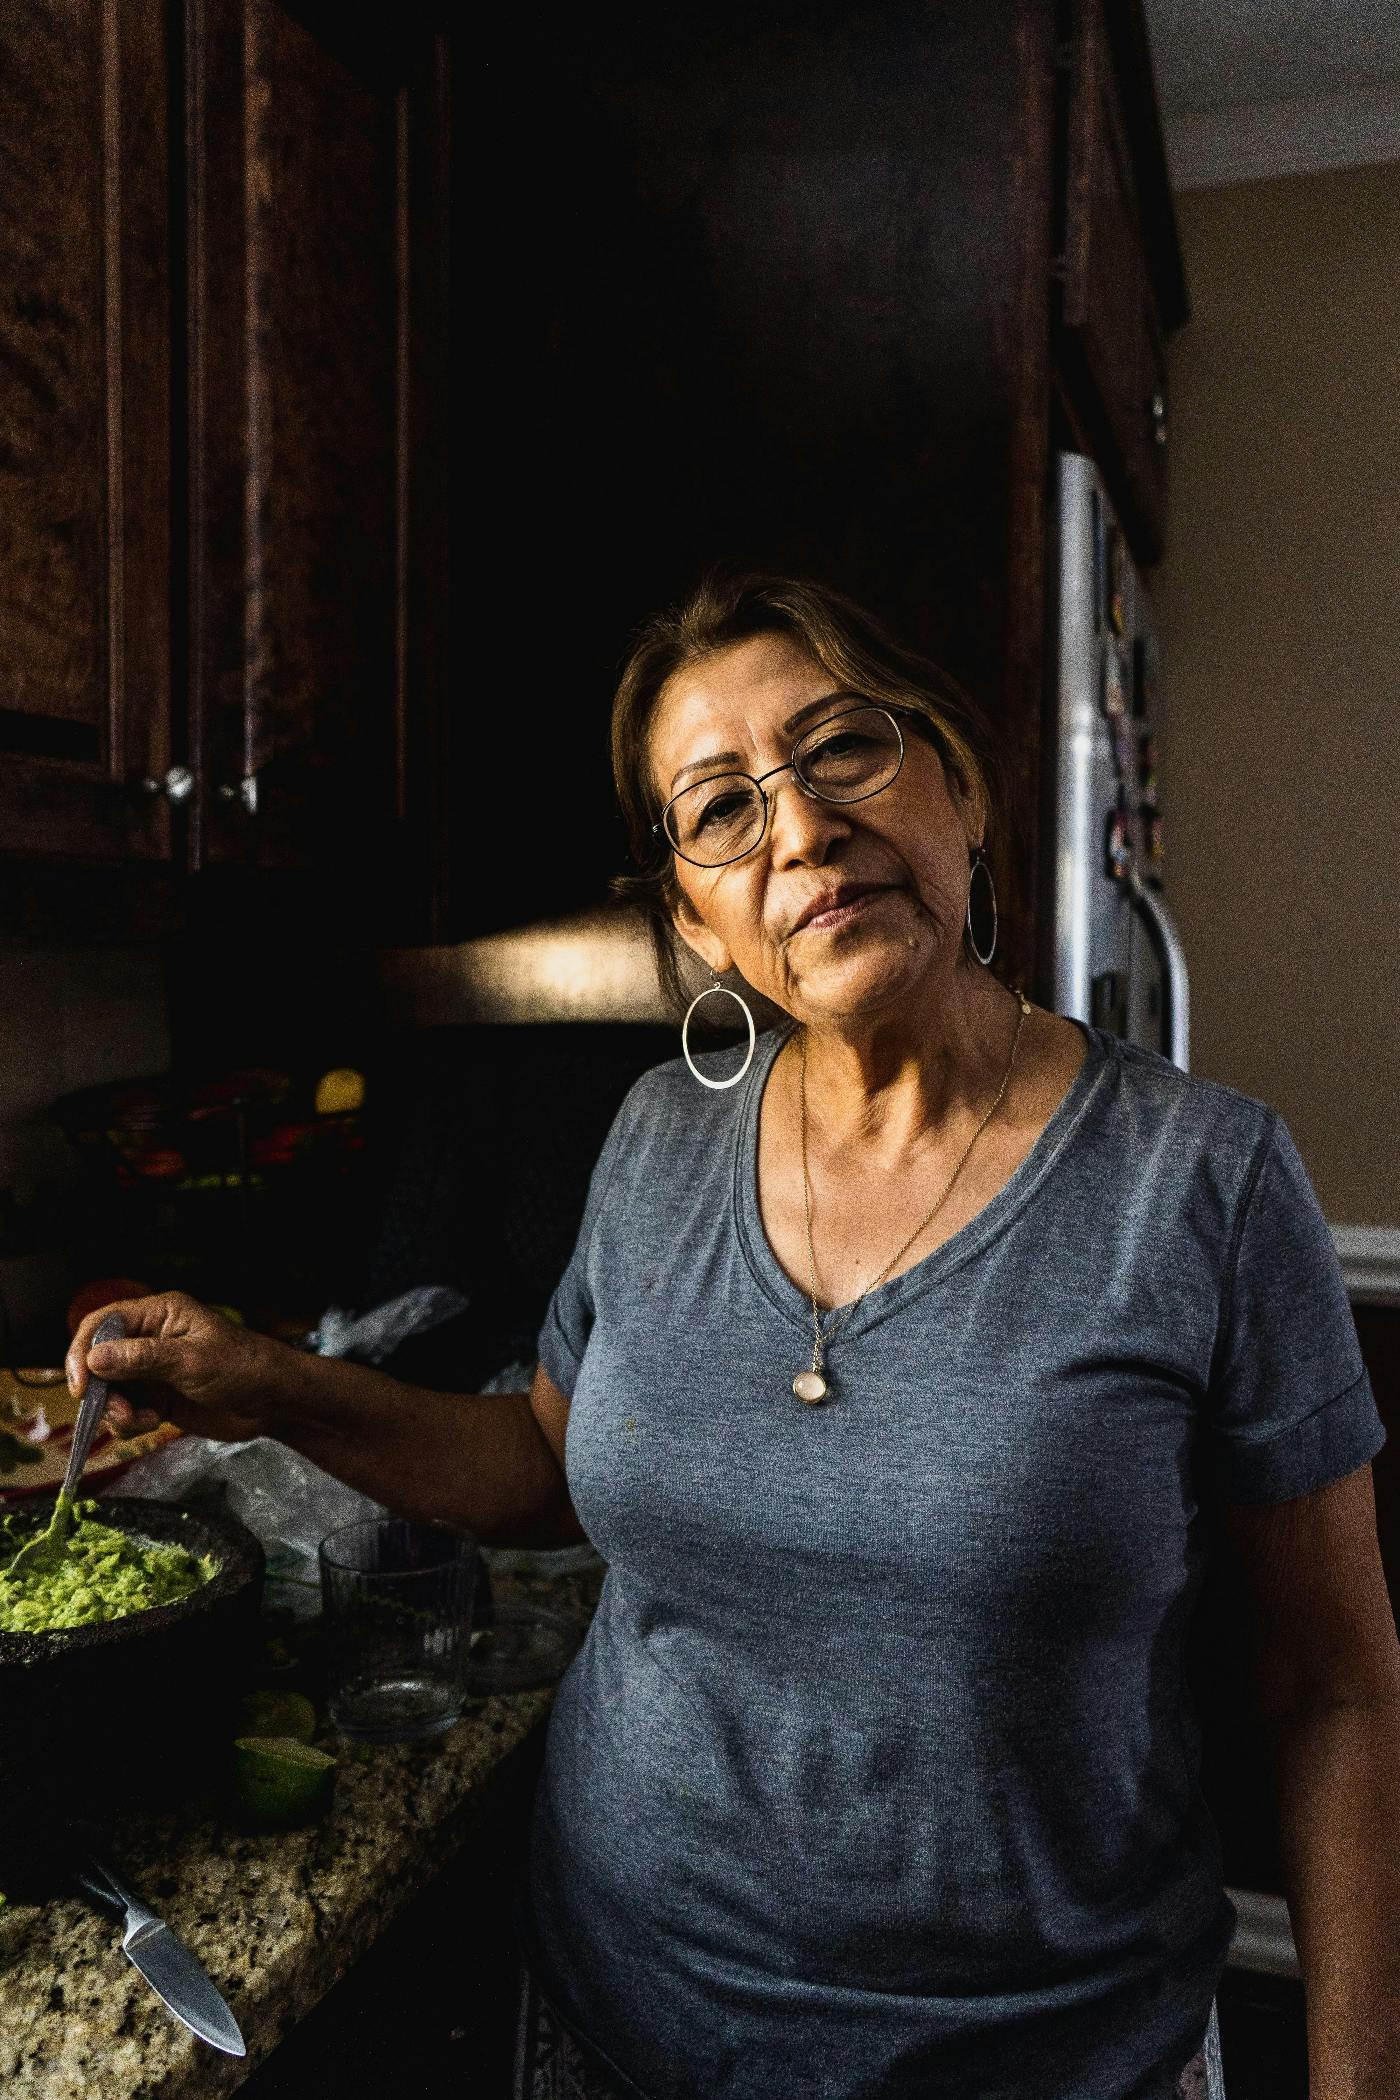 An older Hispanic woman cooking